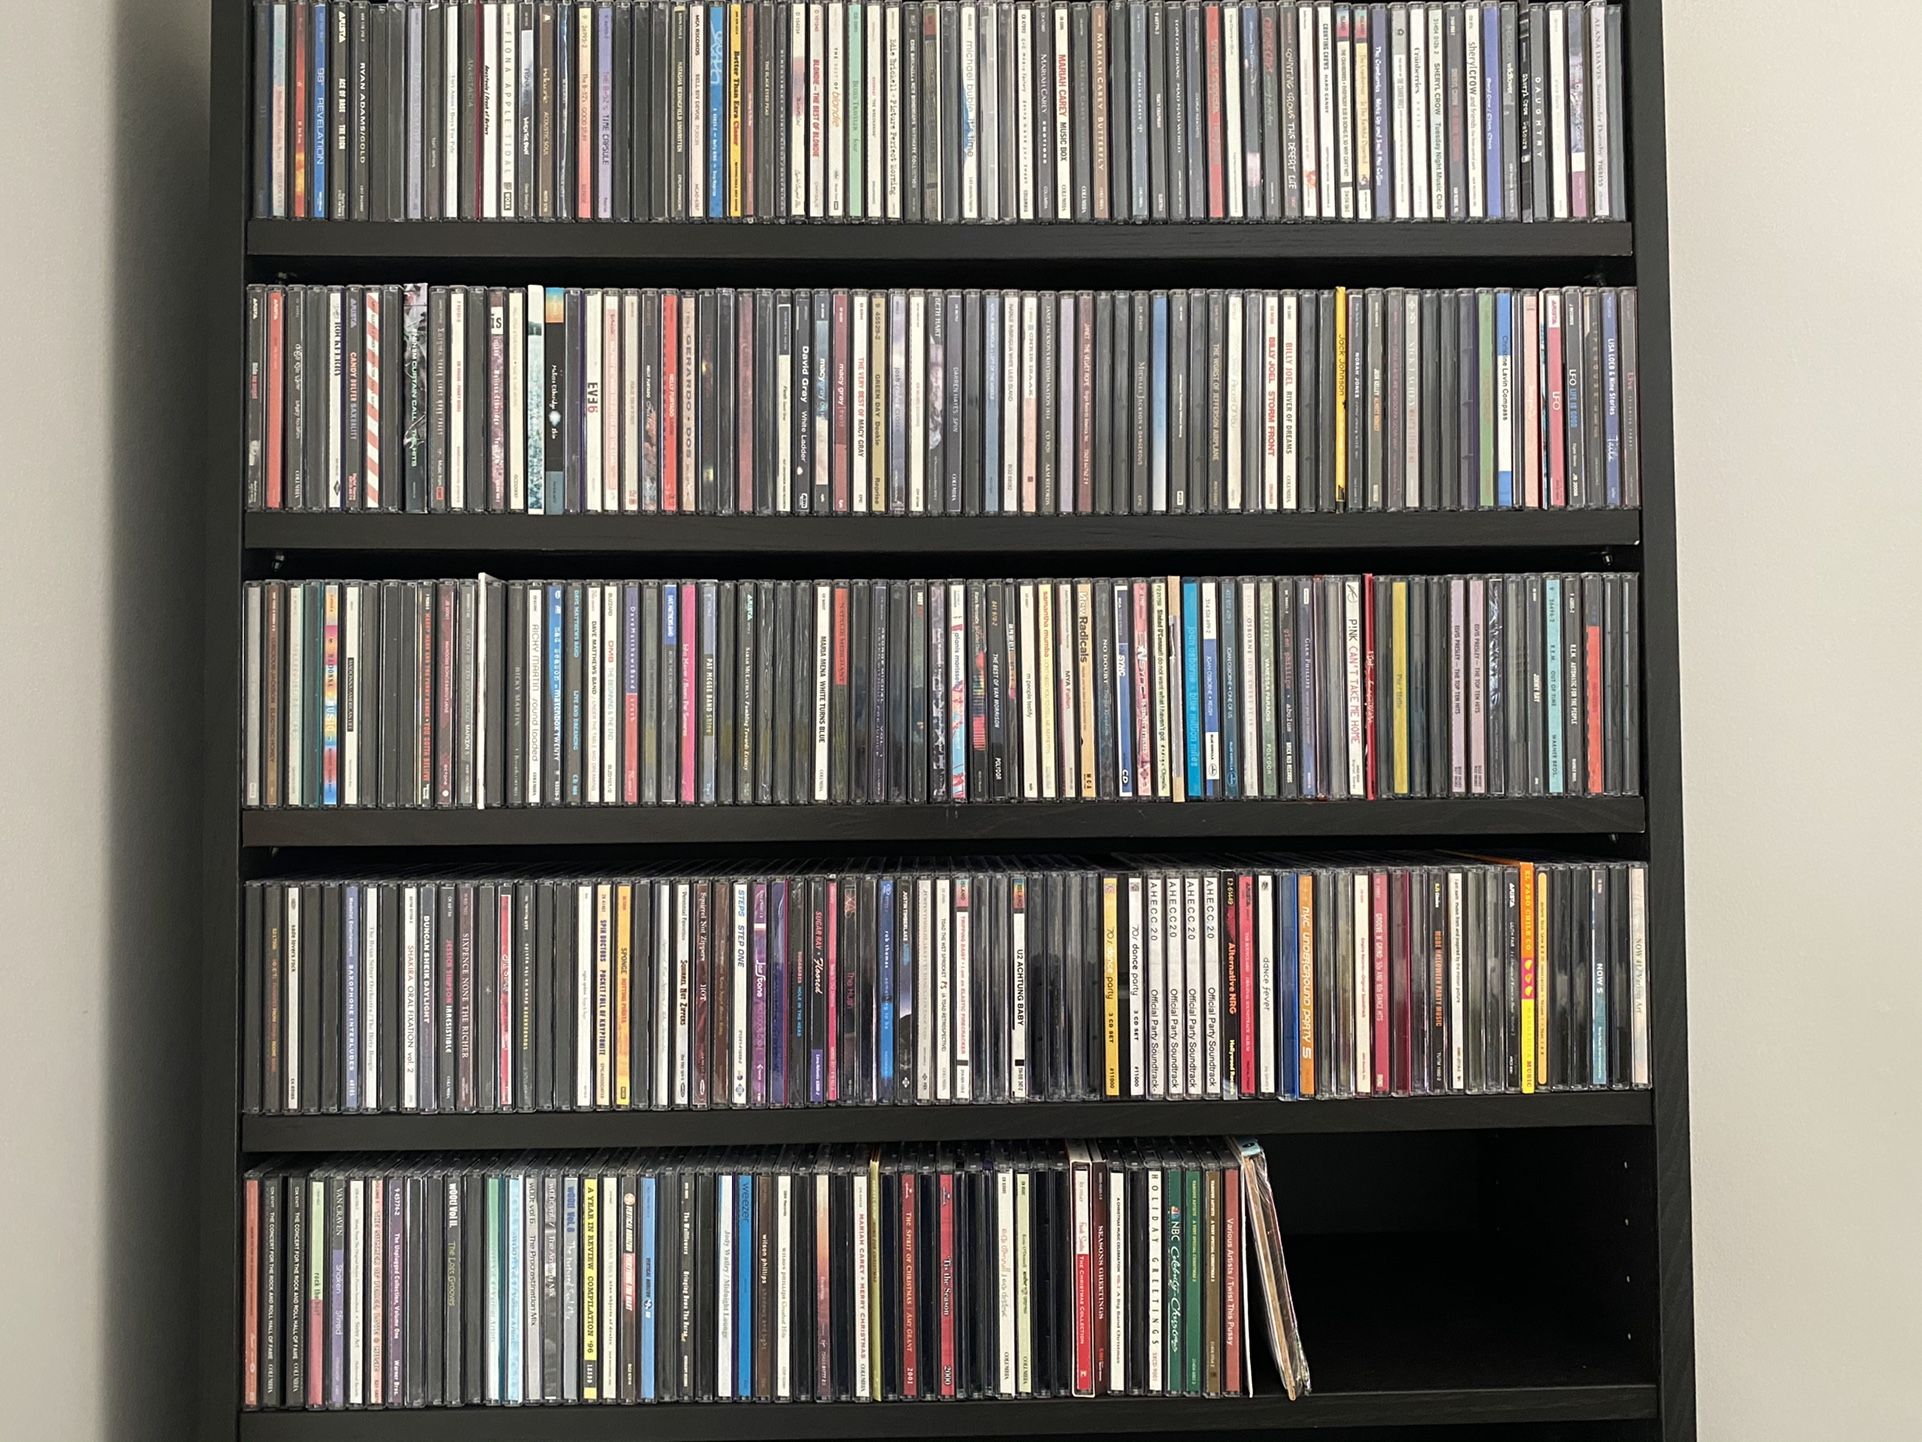 Over 350 Pop/Modern Rock CDs